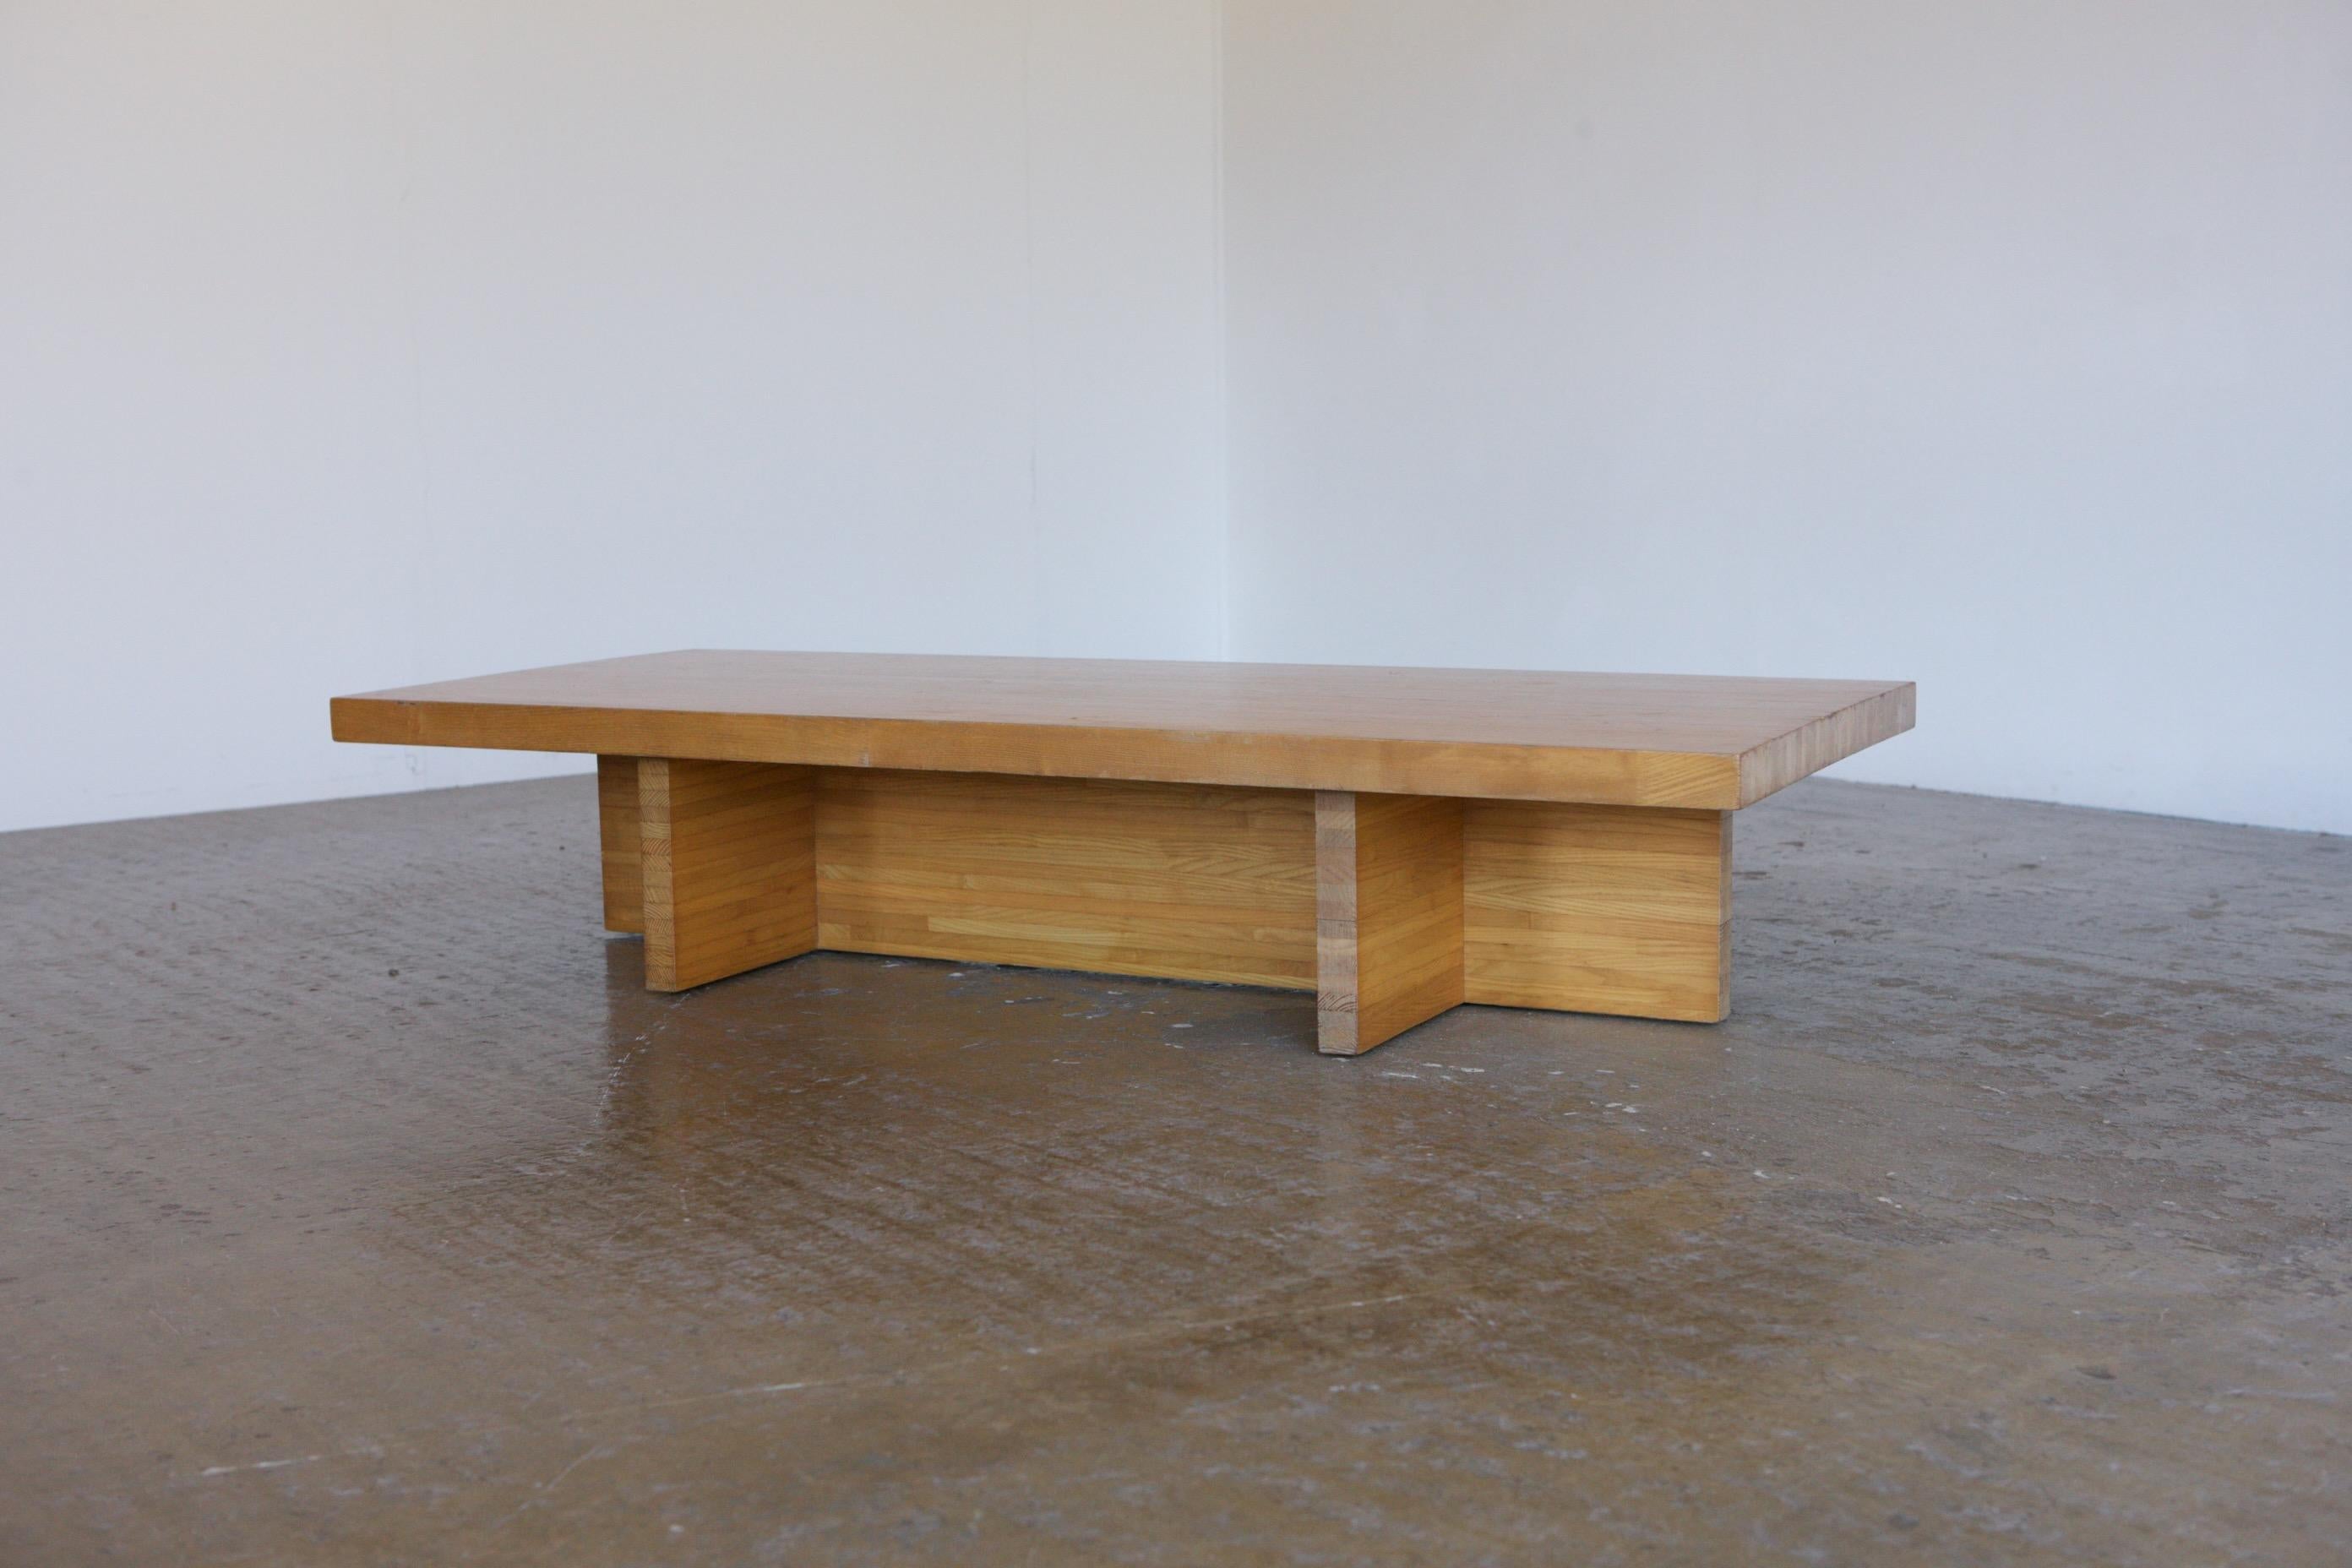 Une grande table basse moderniste. Une pièce minimaliste à la manière du design hollandais en bois massif.